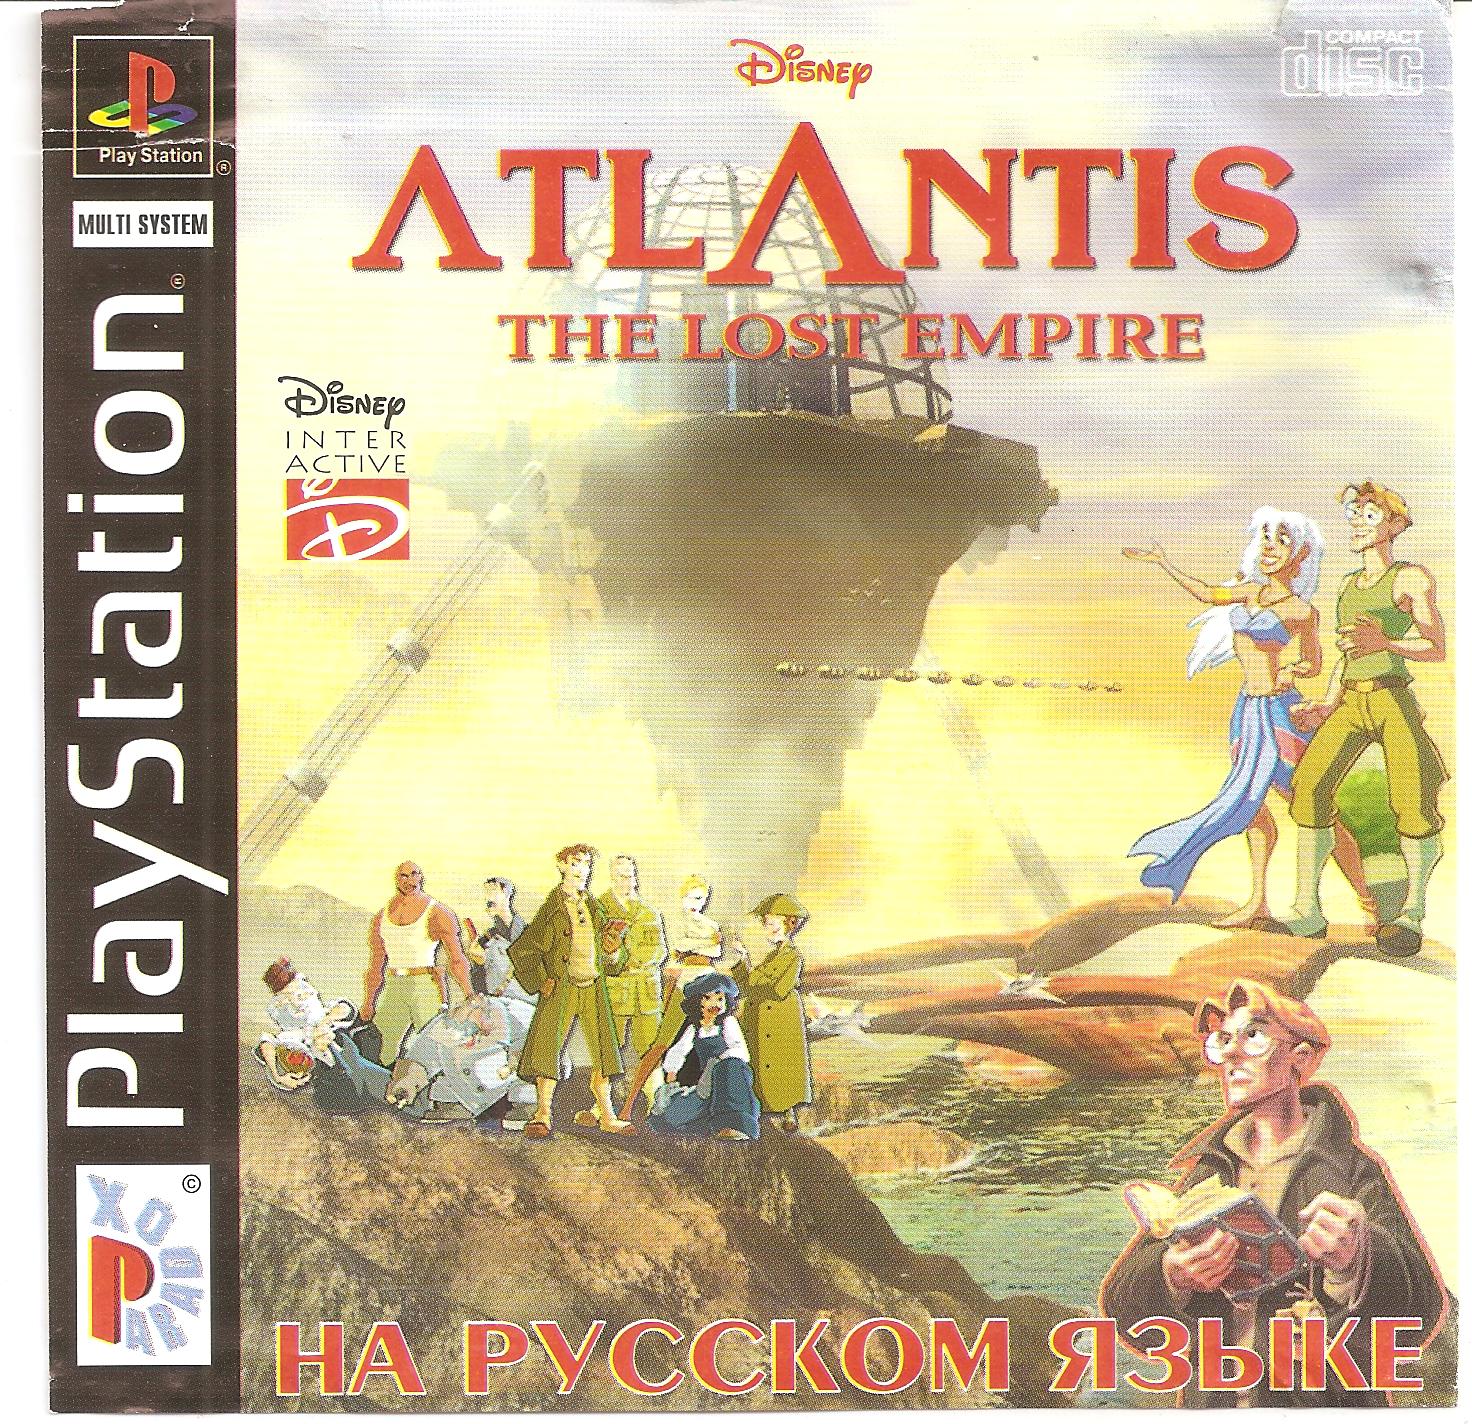 Atlantis 1. Игра Атлантида на пс1. Атлантида игра на ps1. Сони плейстейшен 1 Атлантида. Disney's Atlantis - the Lost Empire ps1.